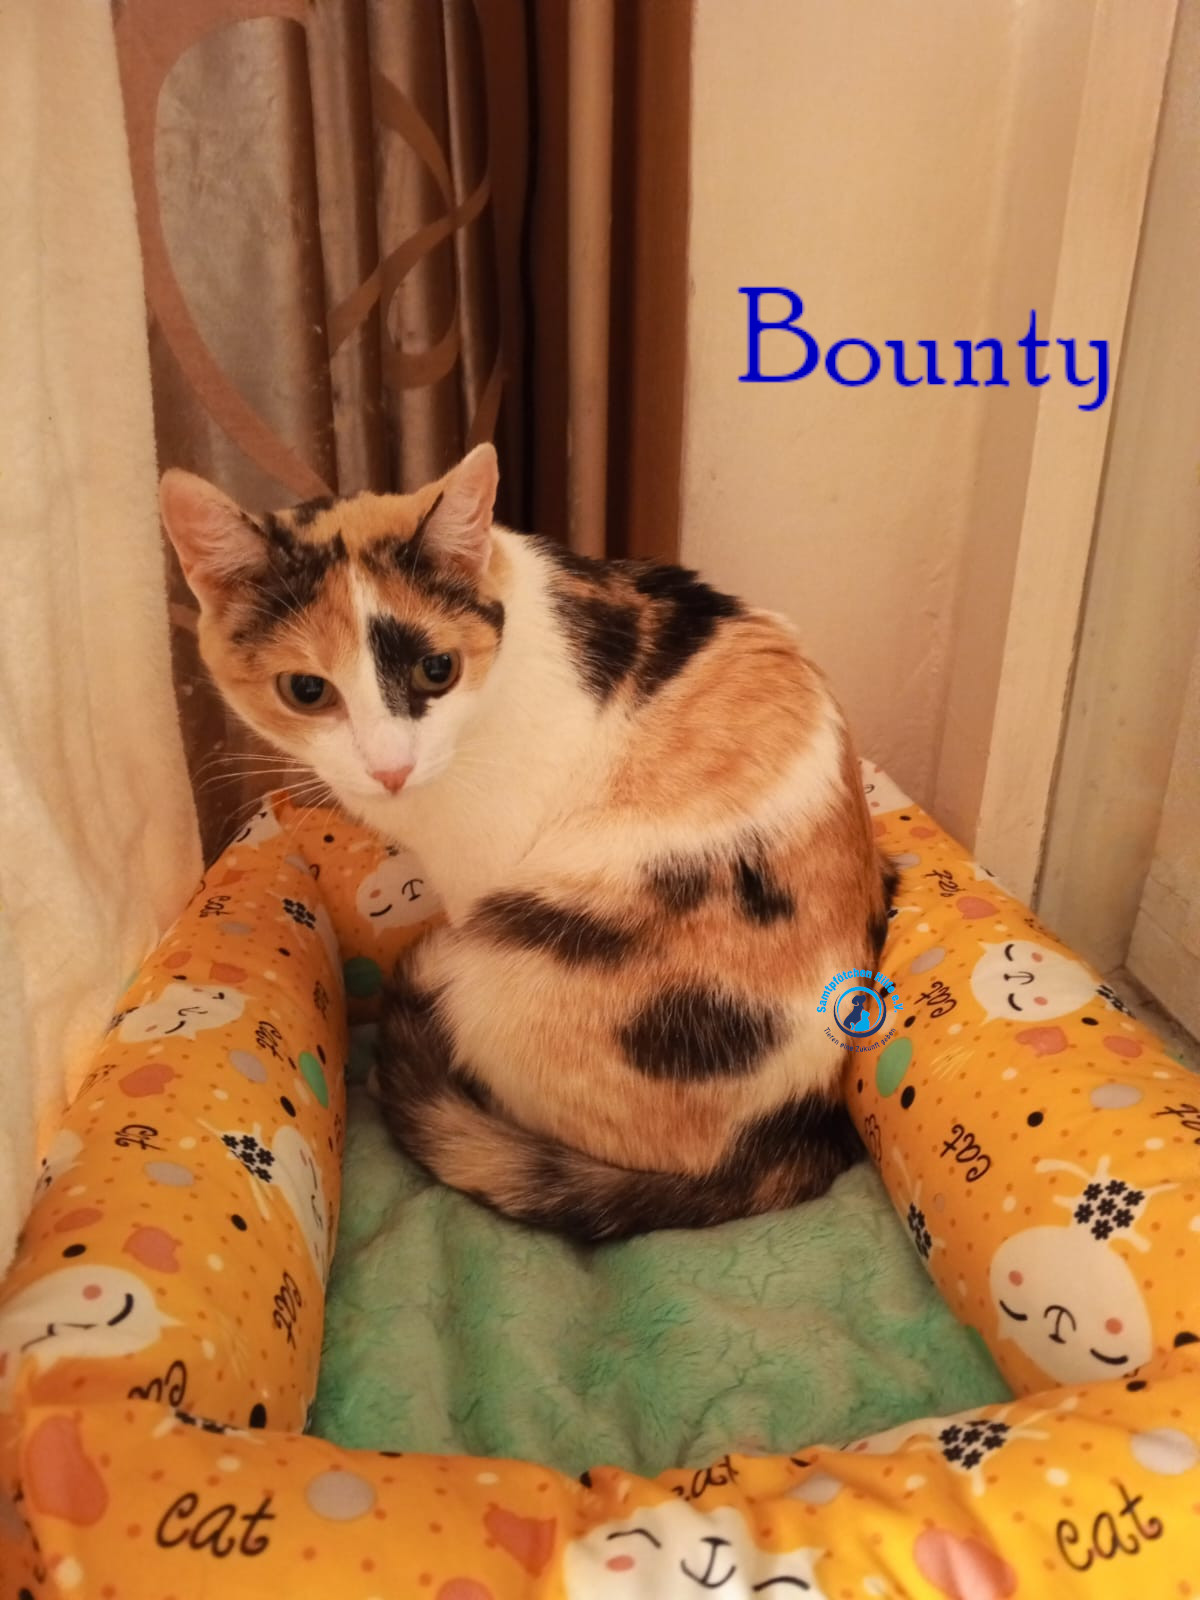 Nadezhda/Katzen/Bounty/Bounty18mN.jpg